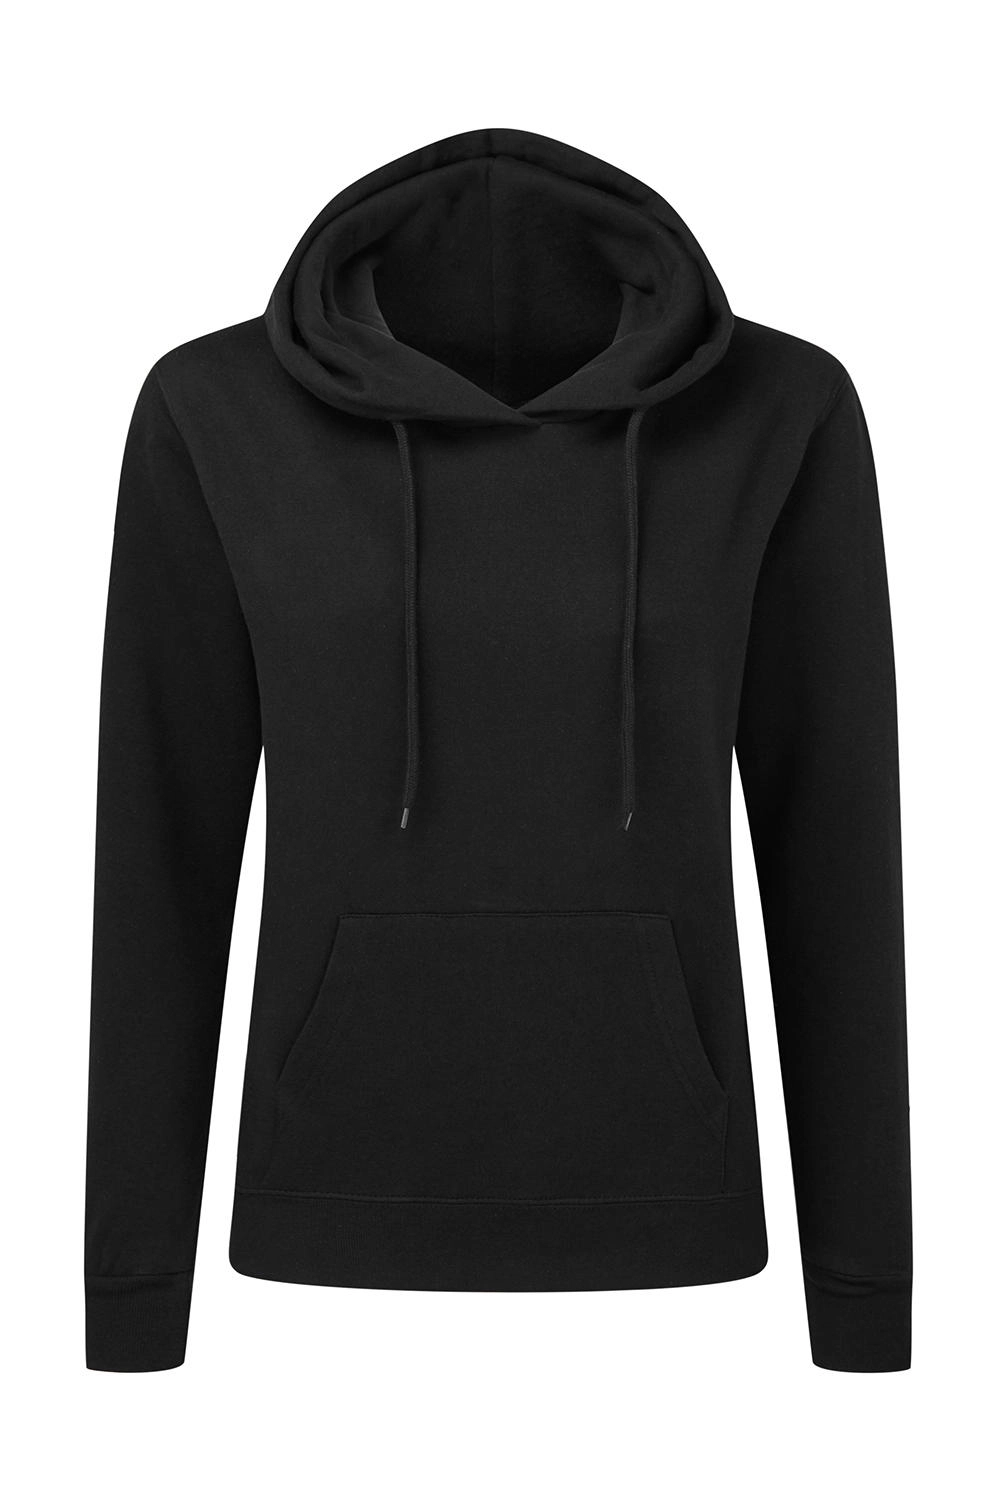 Hooded Sweatshirt Women zum Besticken und Bedrucken in der Farbe Dark Black mit Ihren Logo, Schriftzug oder Motiv.